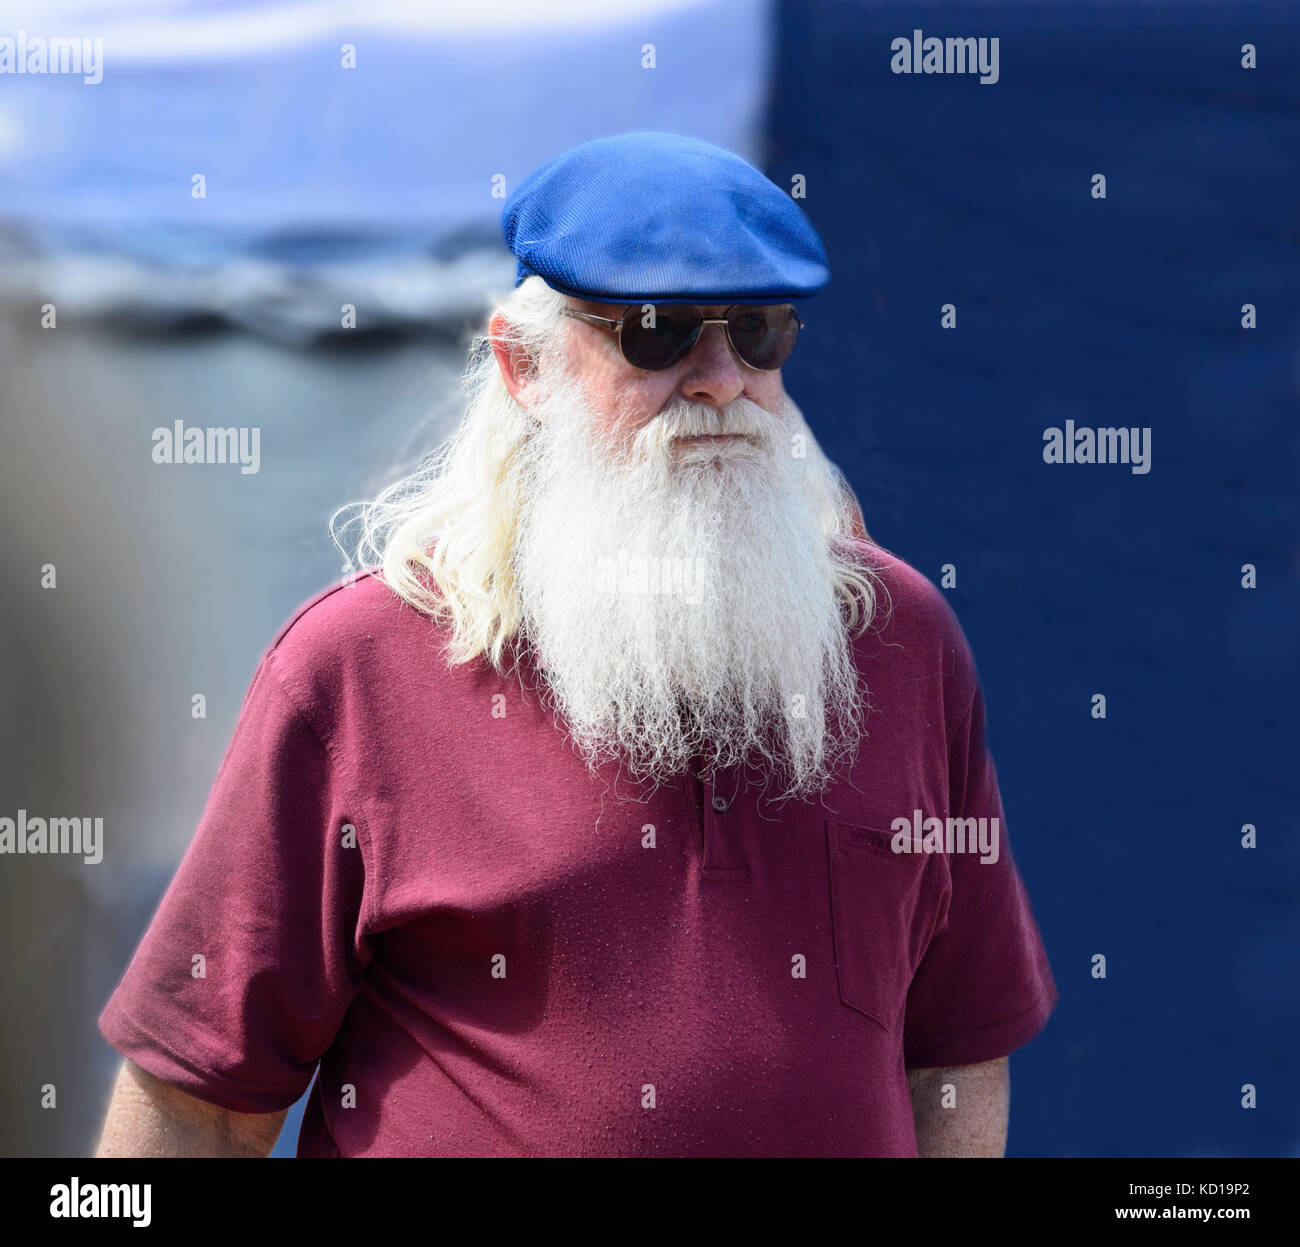 Portrait d'un homme âgé portant un béret, des lunettes et une longue barbe blanche Banque D'Images